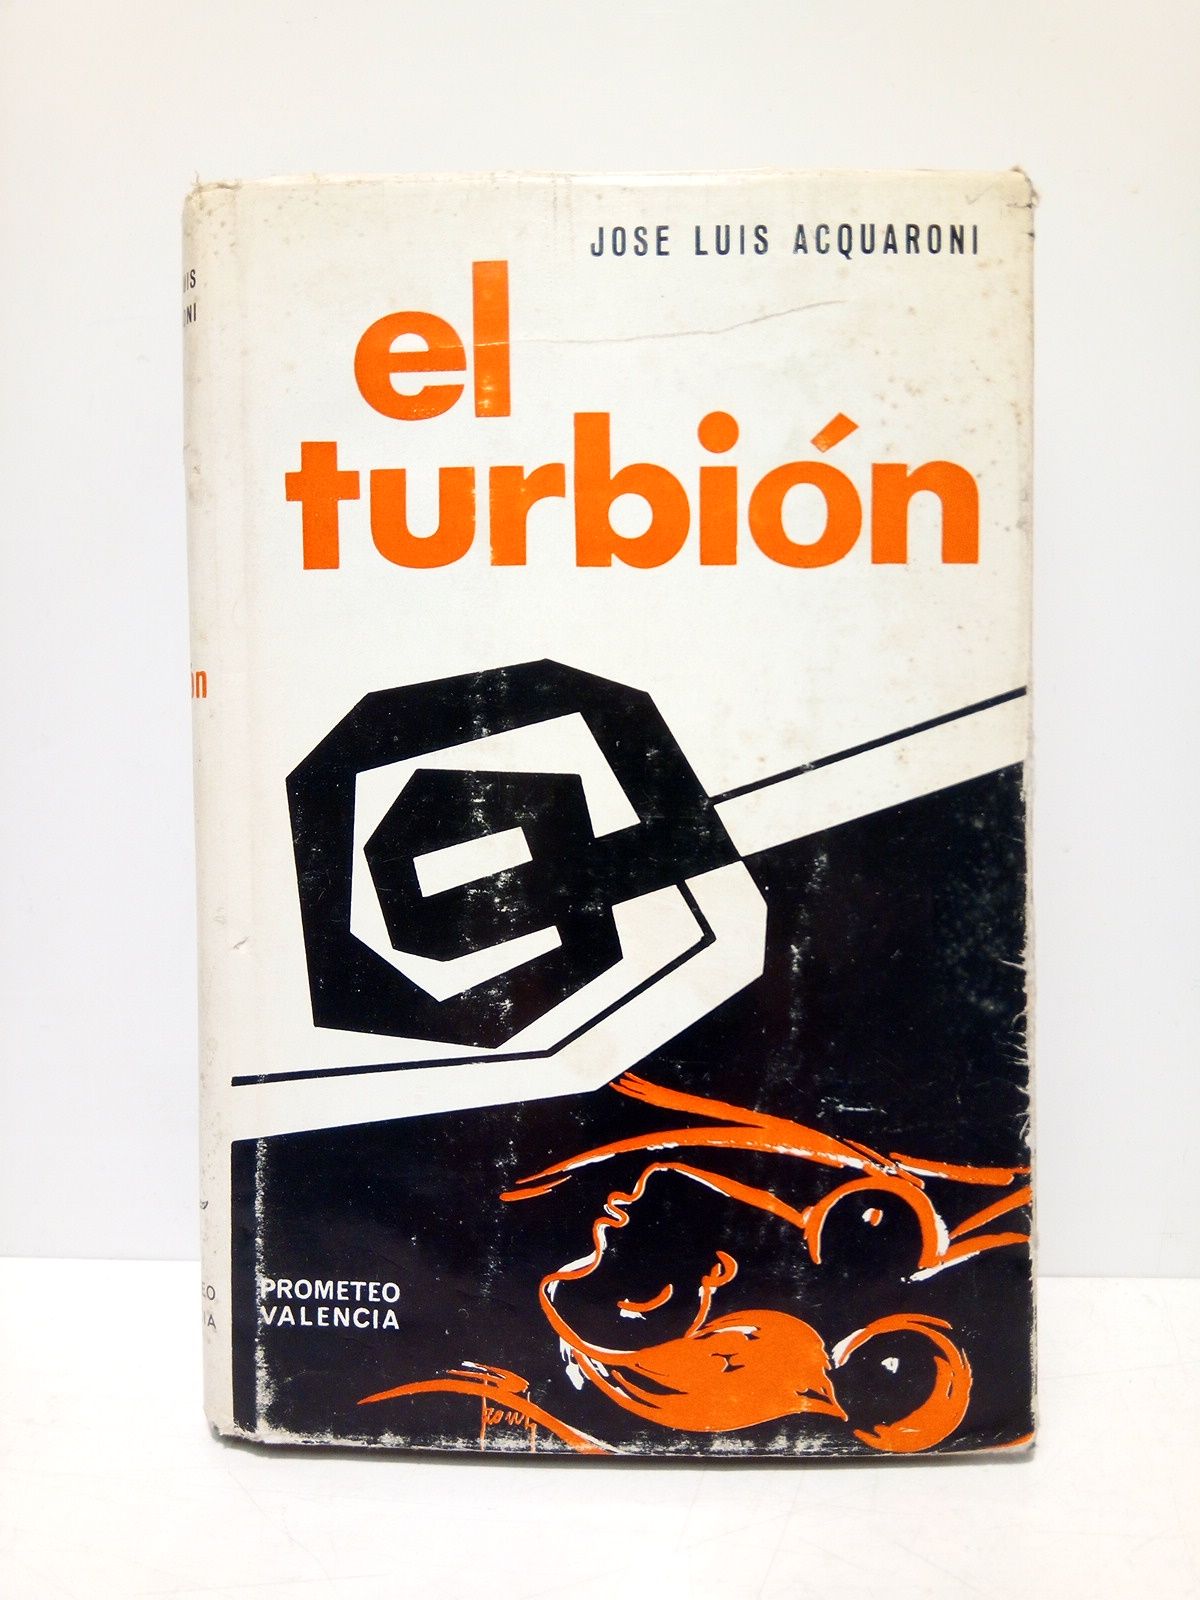 ACQUARONI, Jos Luis - El Turbin. (Novela. Premio Blasco Ibaez 1967)